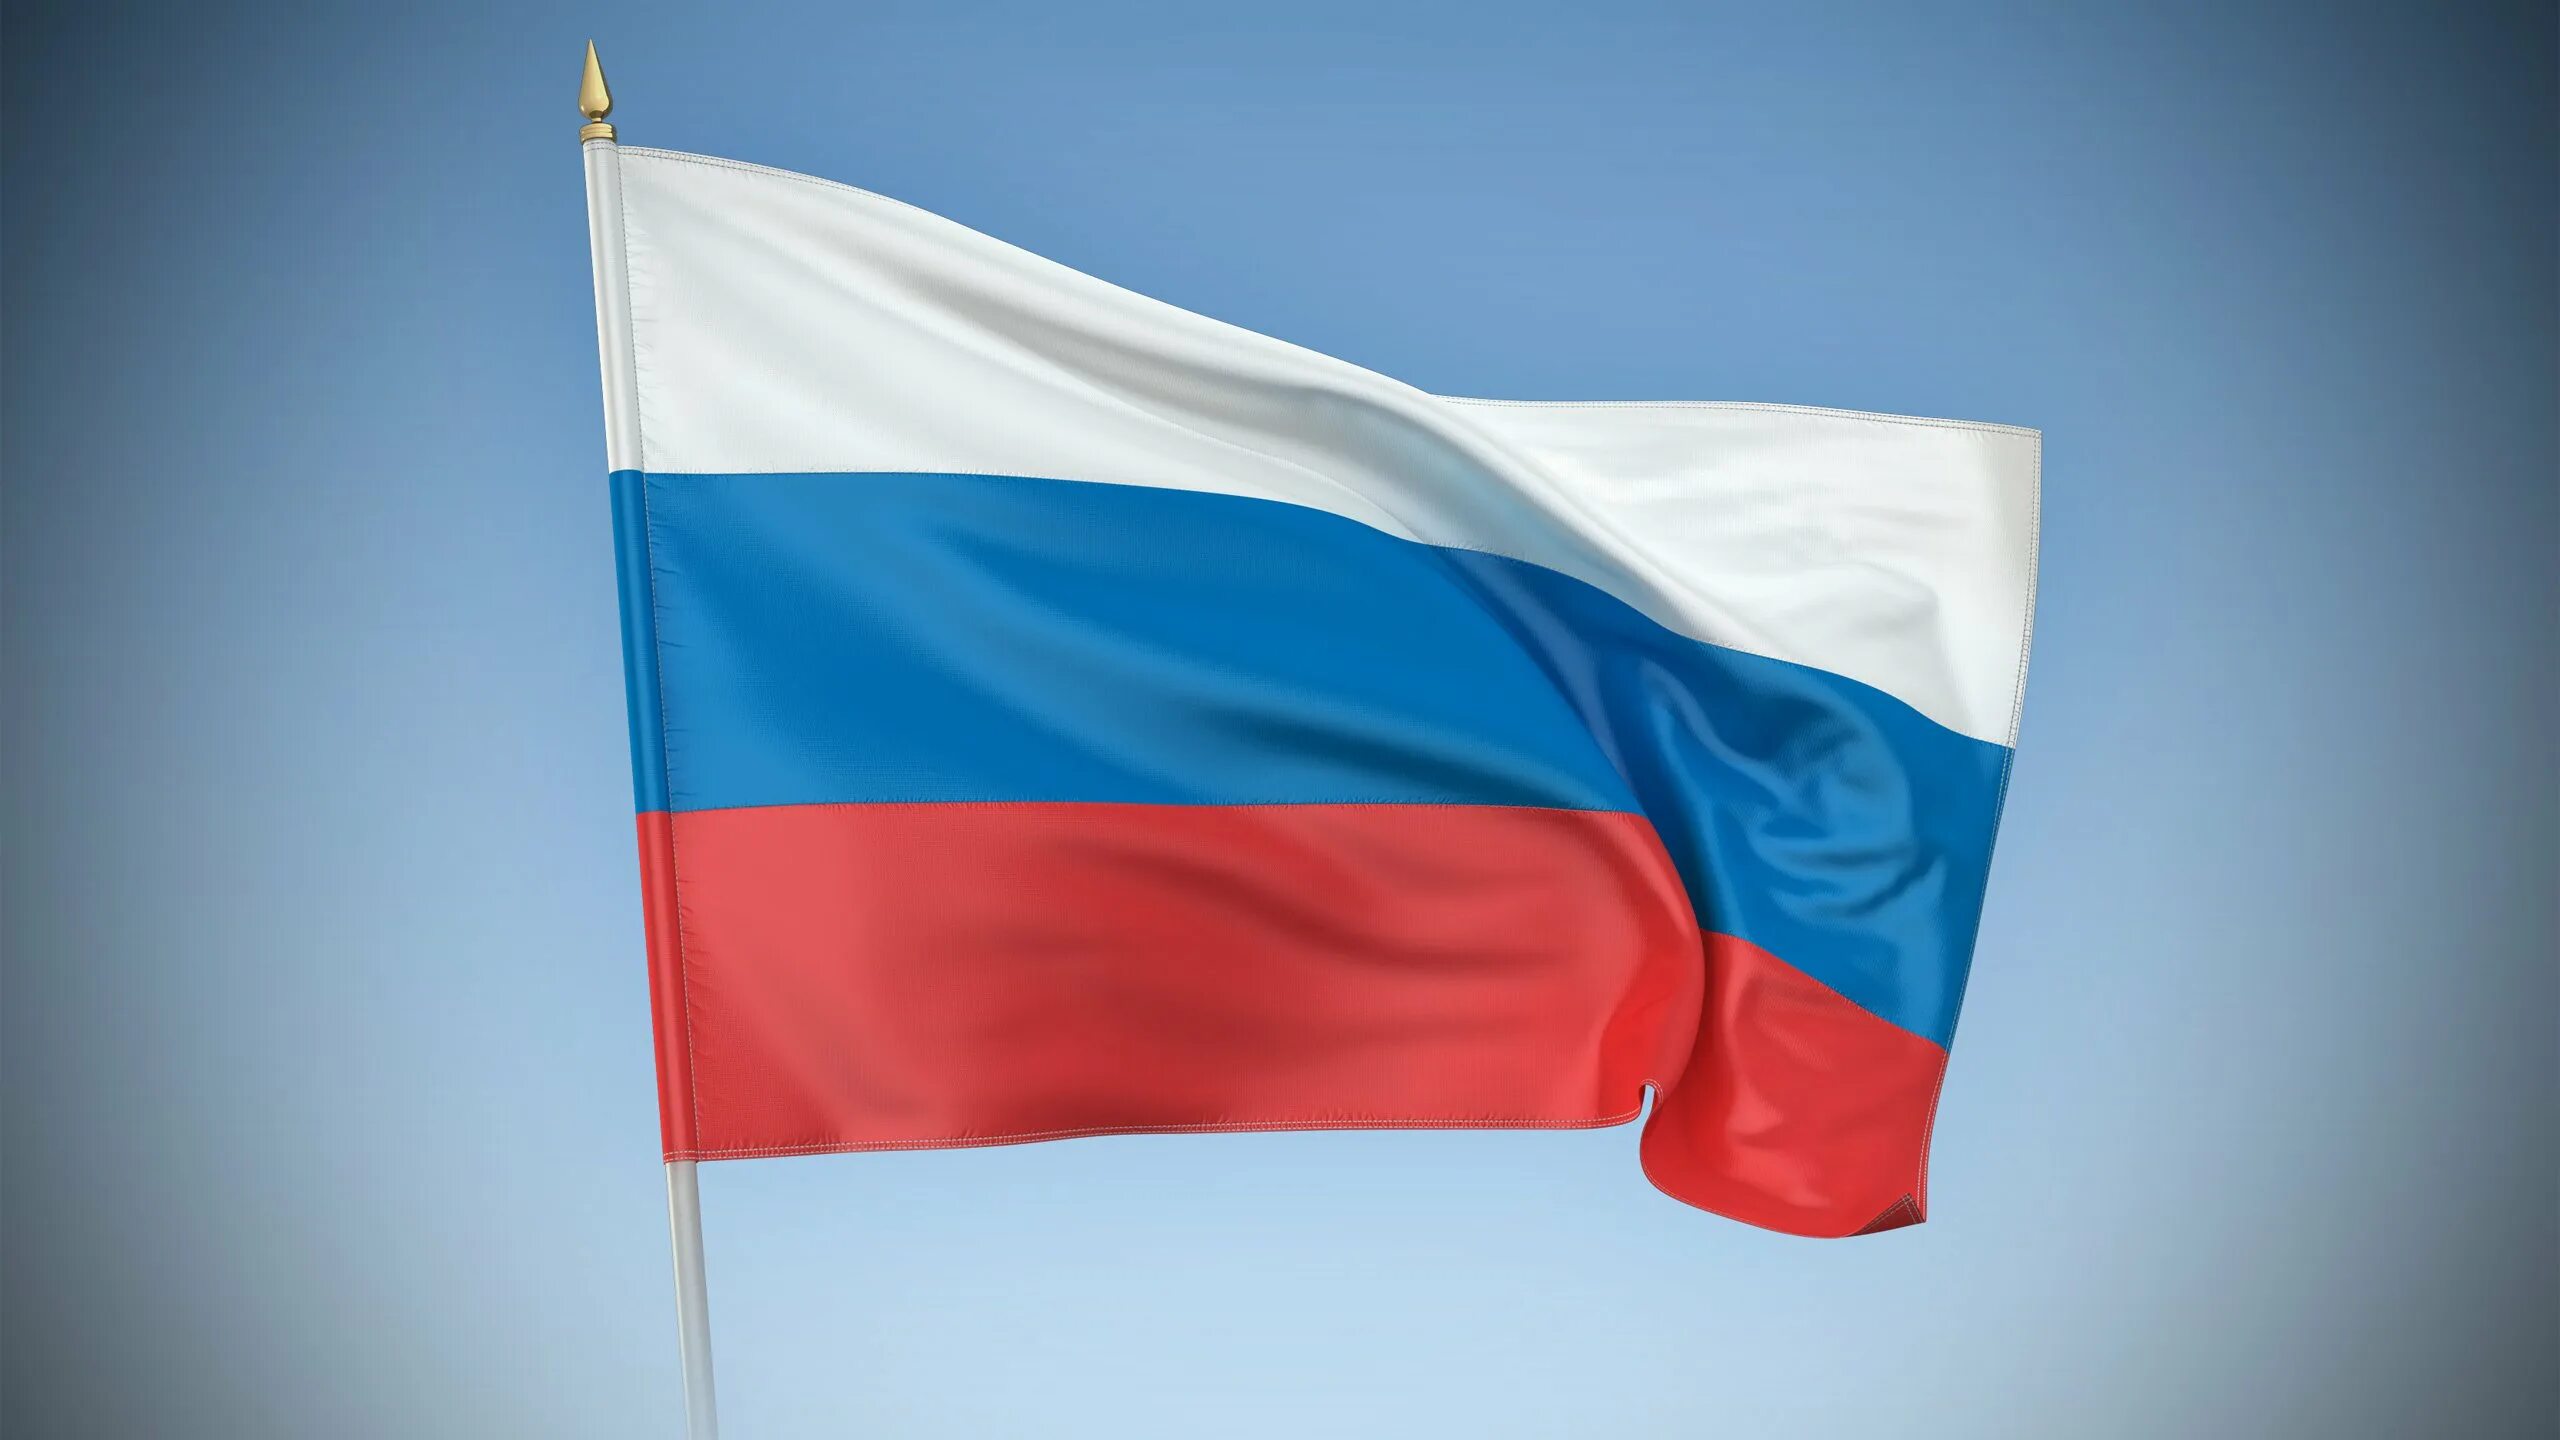 Как выглядит флаг картинка. Флаг РФ. Ф̆̈л̆̈ӑ̈г̆̈ р̆̈о̆̈с̆̈с̆̈й̈й̈. Флаг Российской Федерации Триколор. Развеваюшийся флаг Российской Федерации.